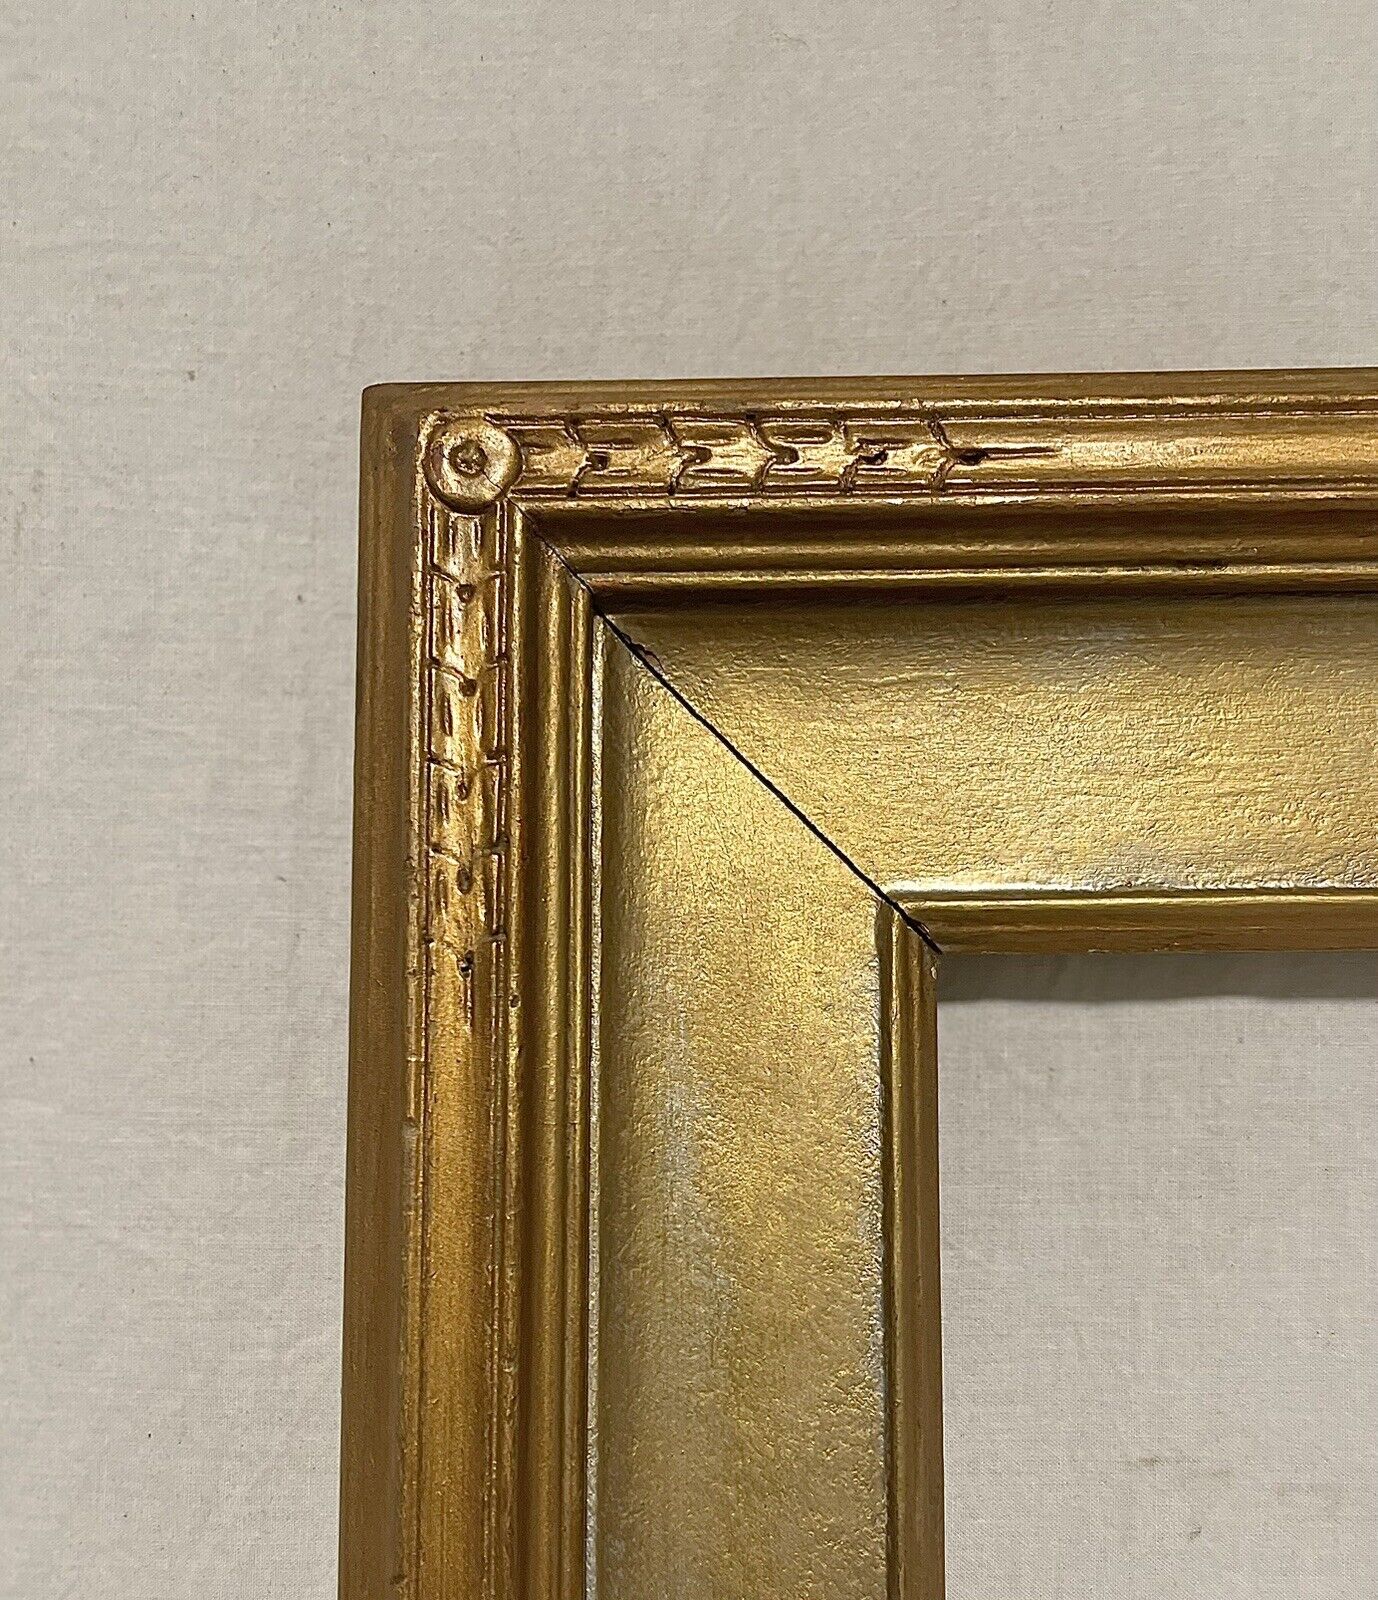 ANTIQUE FITs 12”x16” GOLD GILT ART NOUVEAU ROHANE STYLE PICTURE FRAME